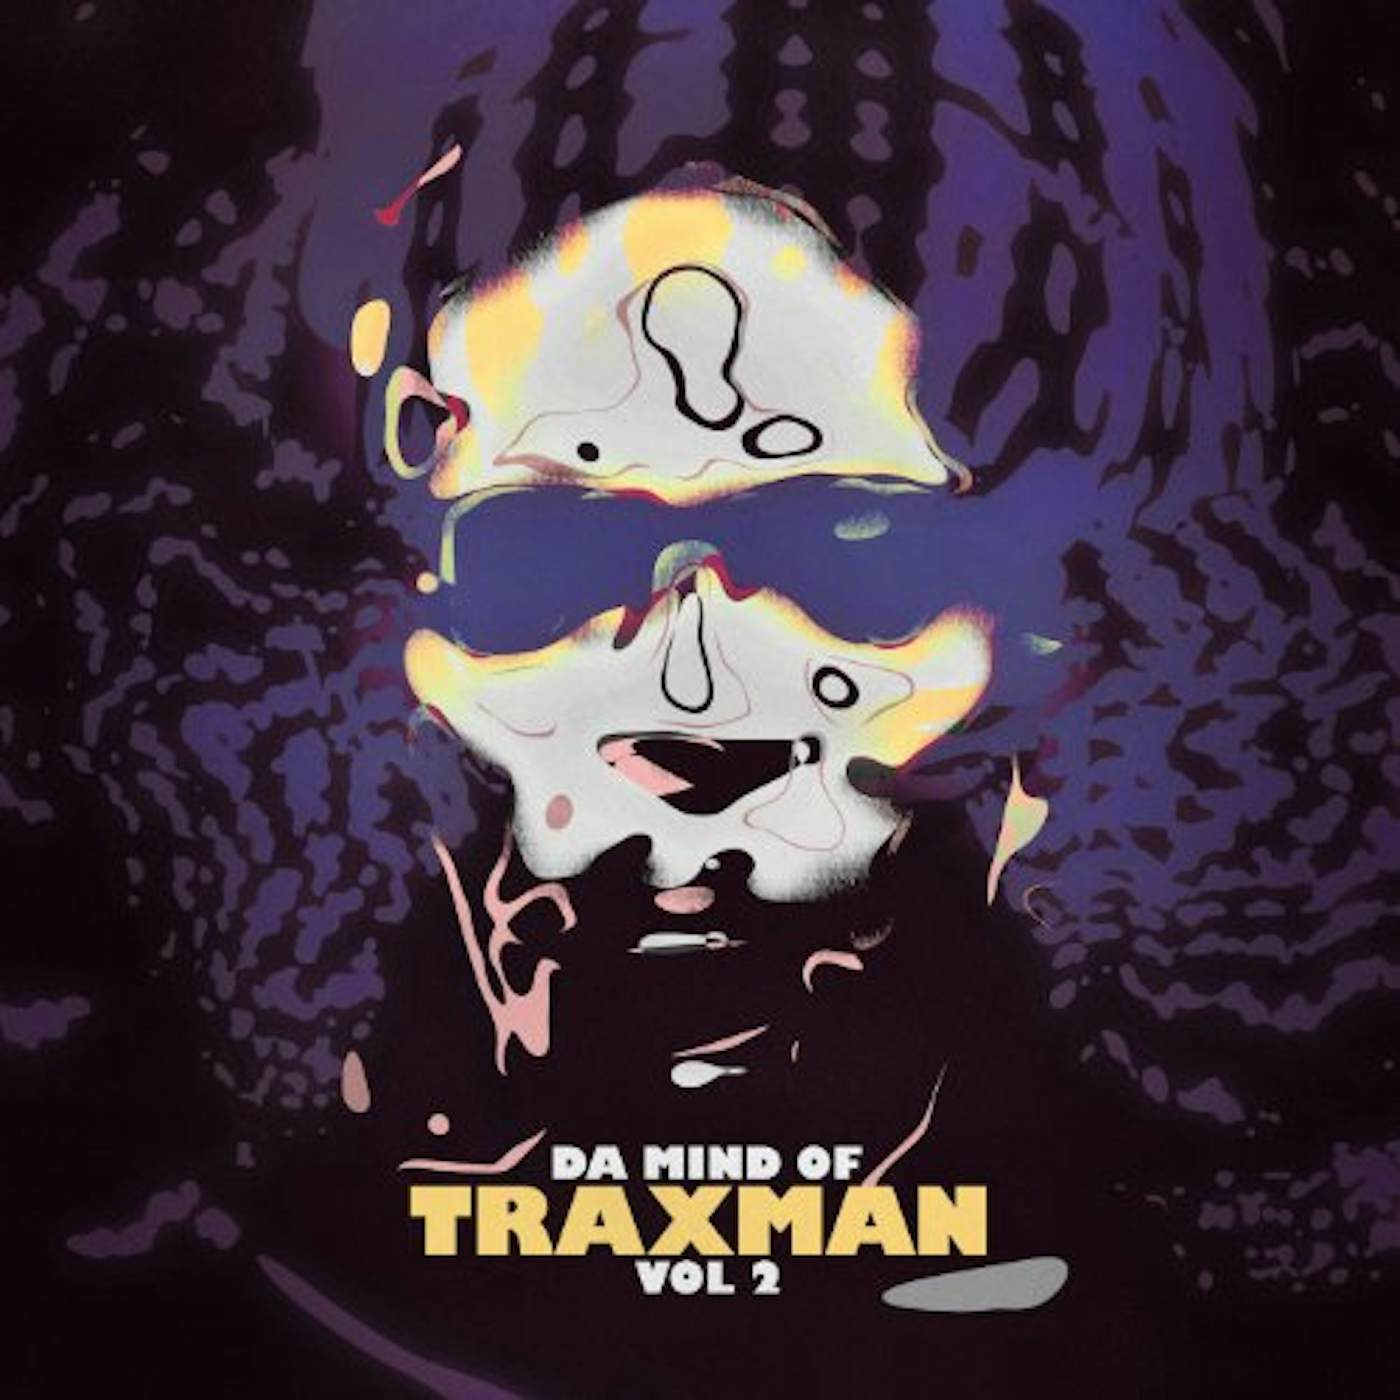 Da Mind Of Traxman Vol 2 Vinyl Record